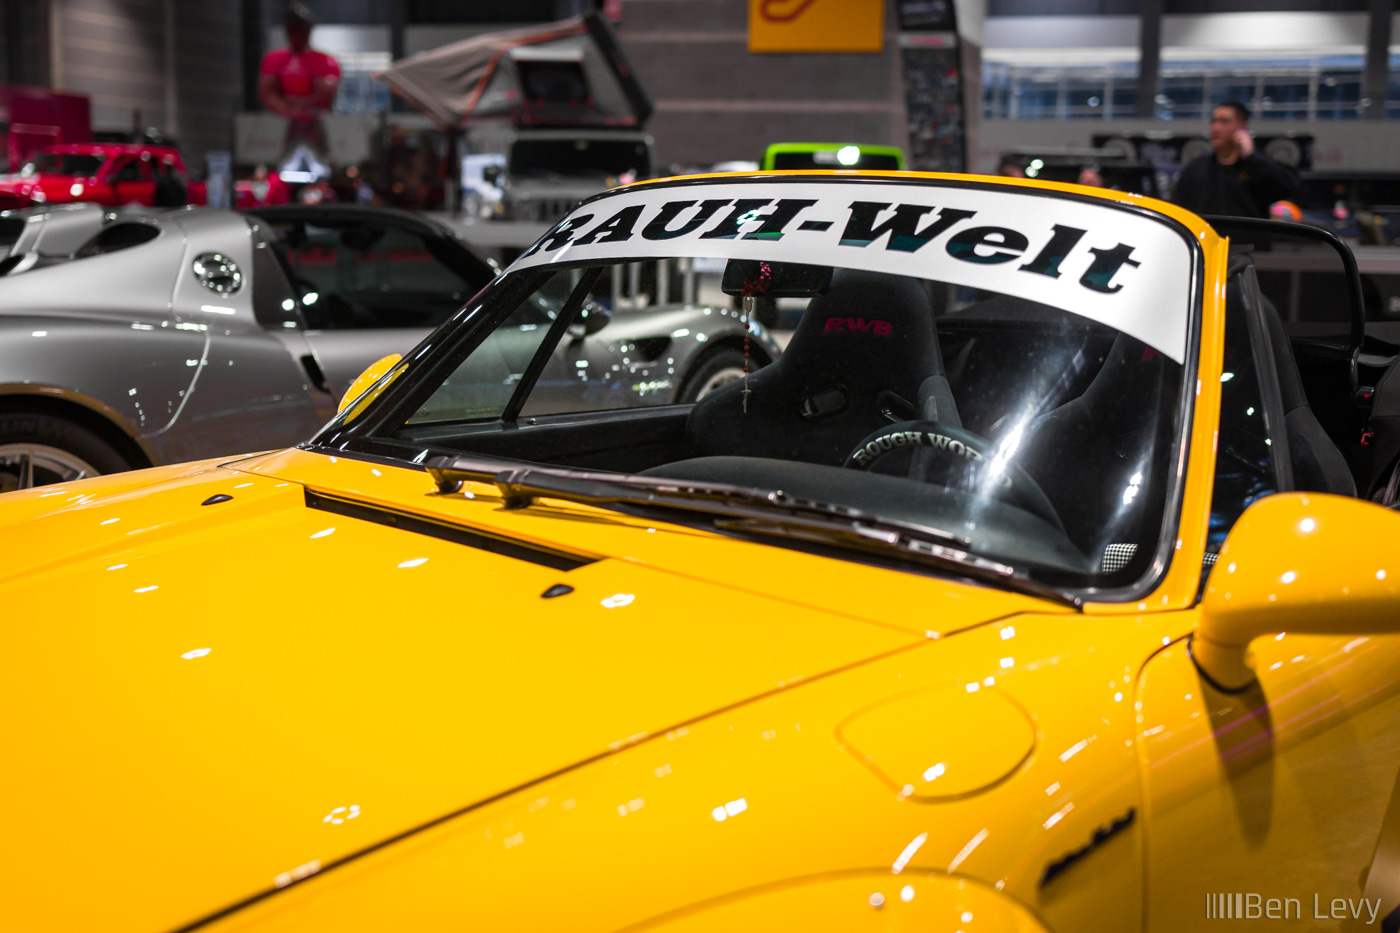 RAUH-Welt Windshield Banner on Yellow Porsche 993